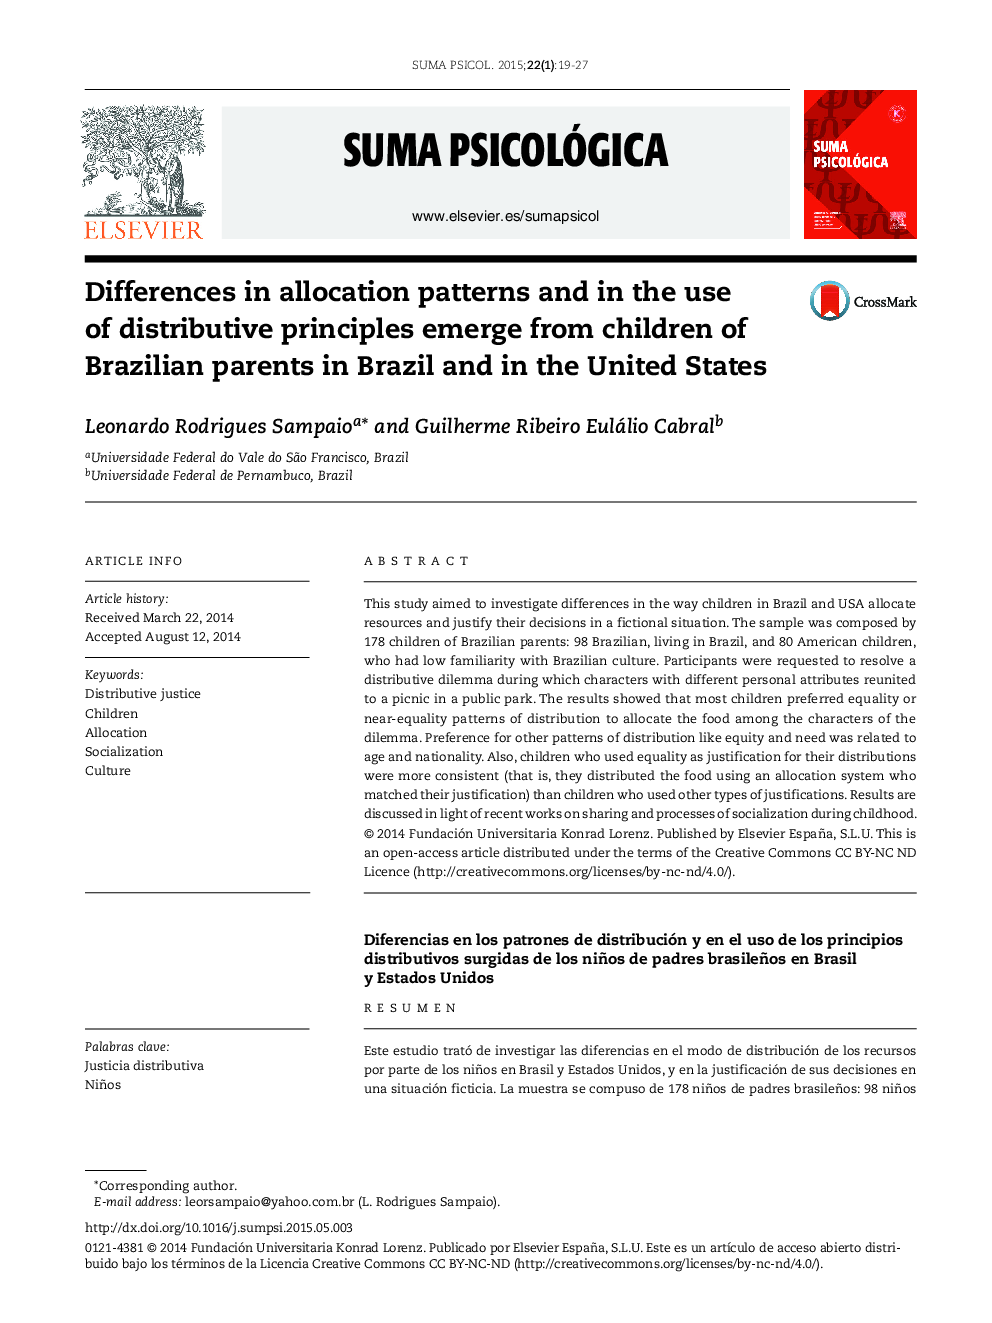 تفاوت در الگوهای تخصیص و استفاده از اصول توزیع از کودکان پدر و مادر برزیل در برزیل و ایالات متحده ظاهر می شود 